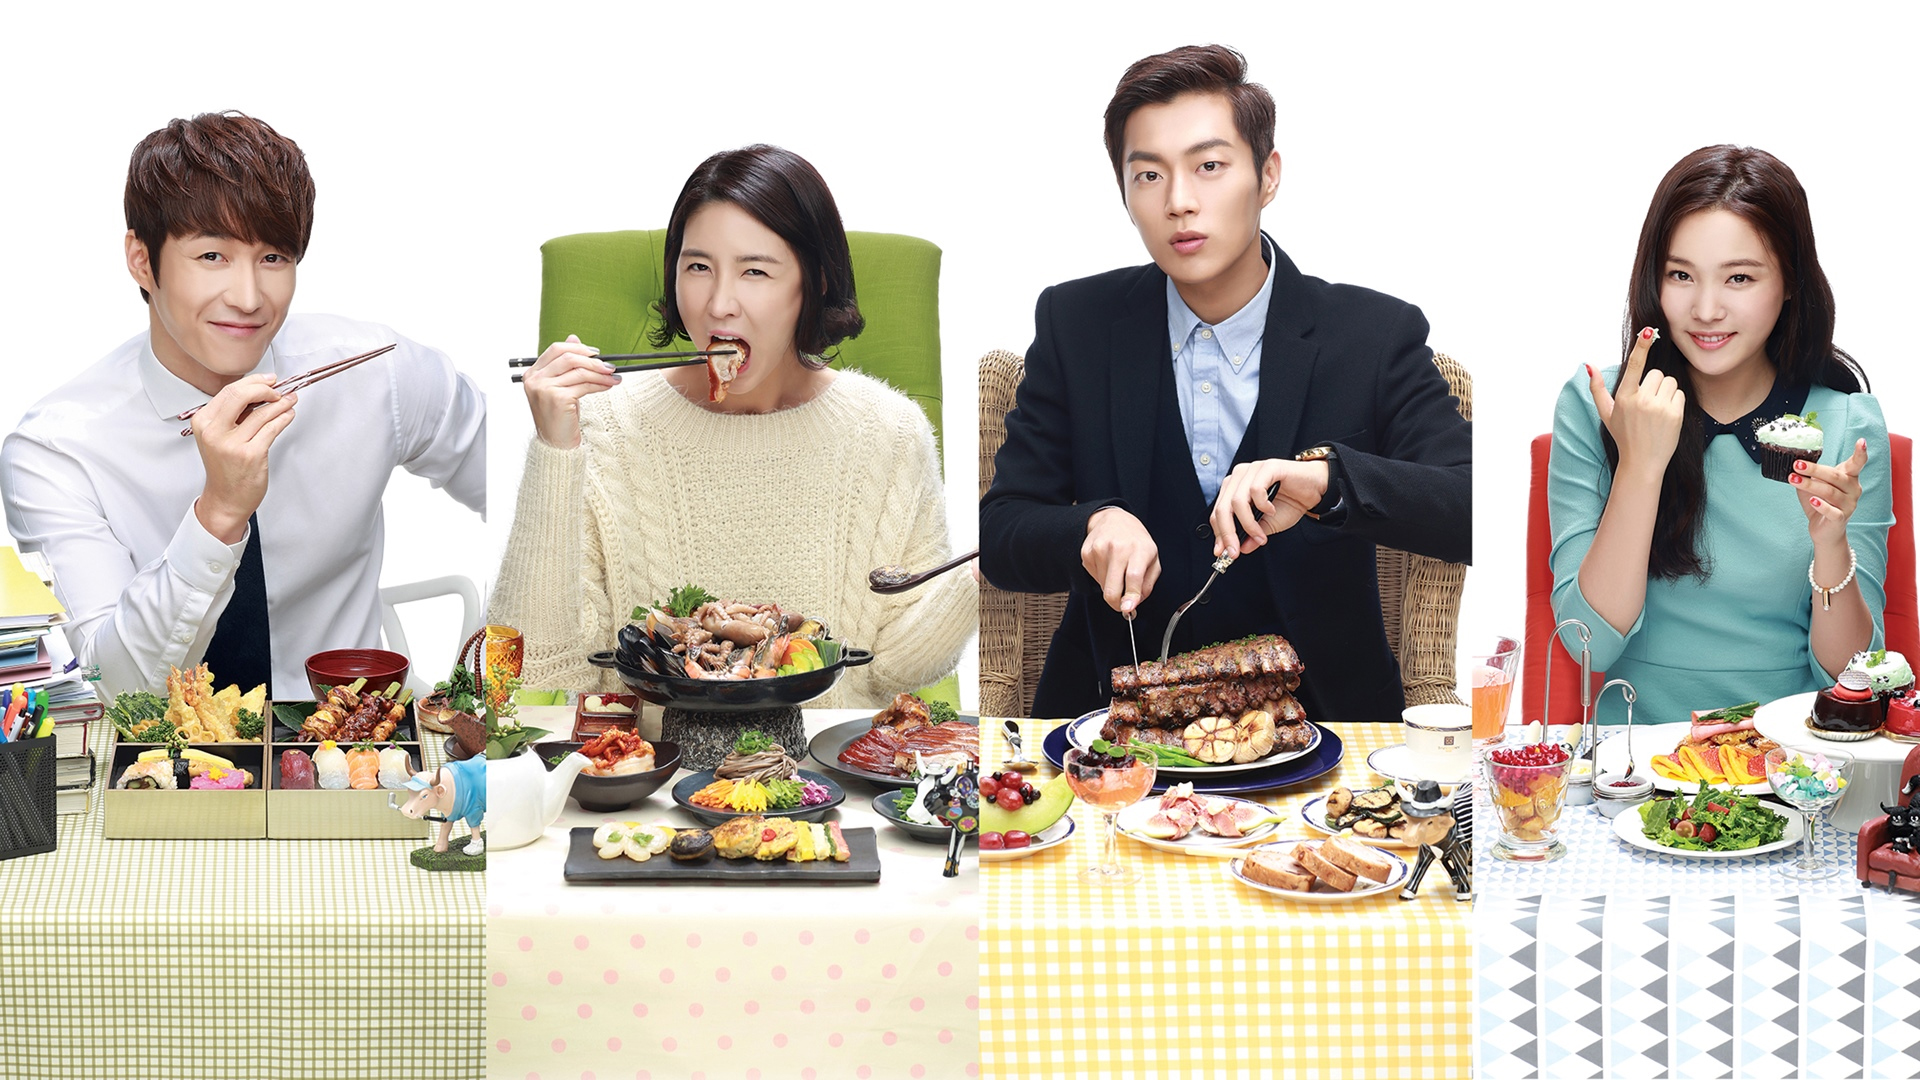 Bạn yêu thích nền ẩm thực Hàn Quốc? Vậy thì đừng bỏ qua series phim Let's eat này nhé!